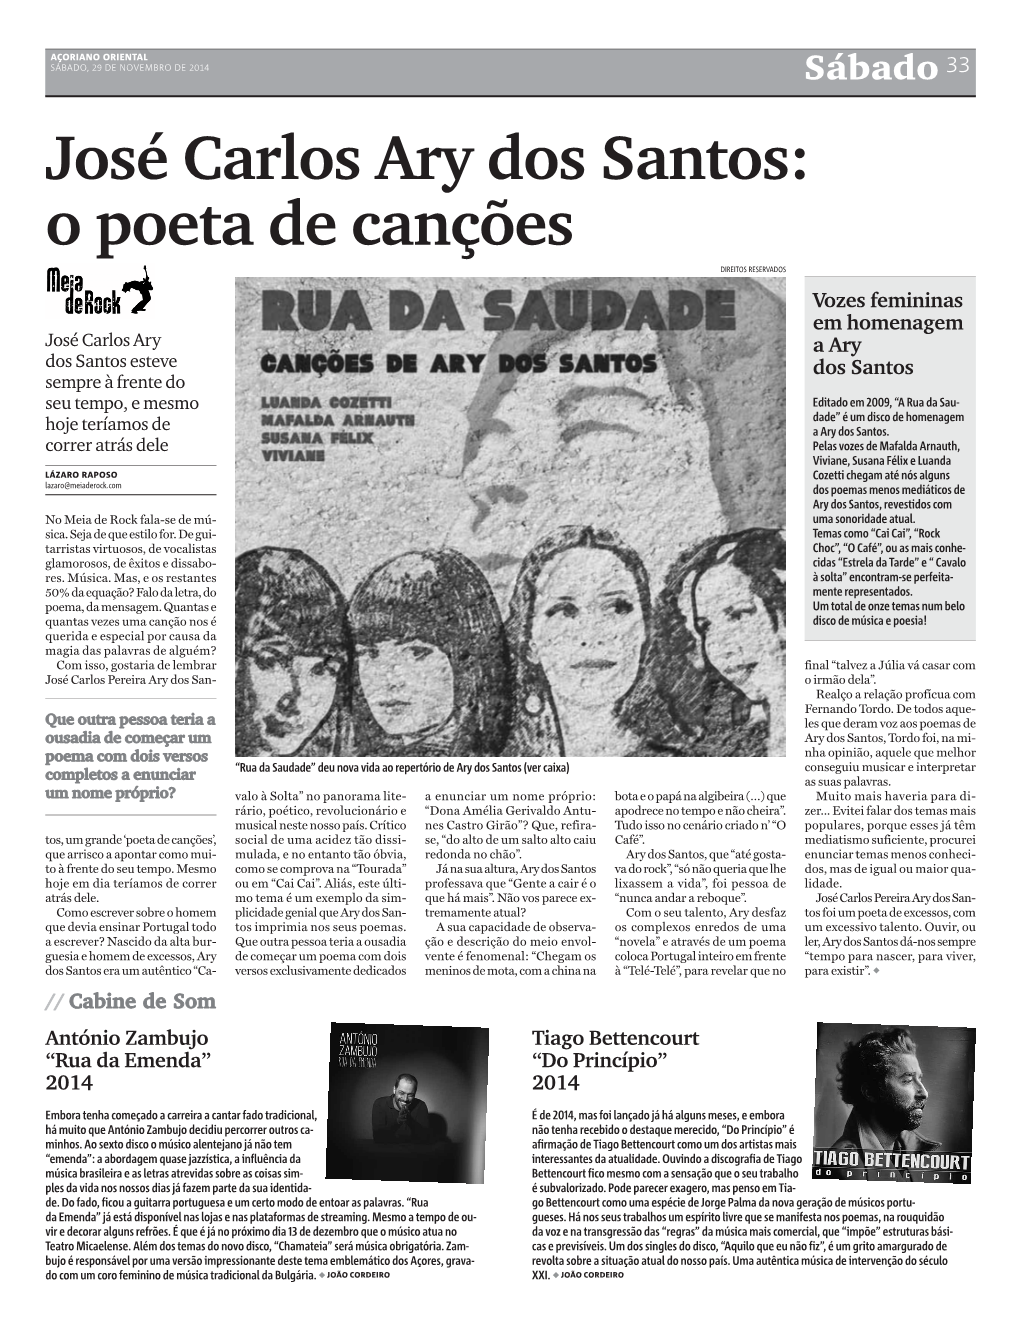 José Carlos Ary Dos Santos: O Poeta De Canções